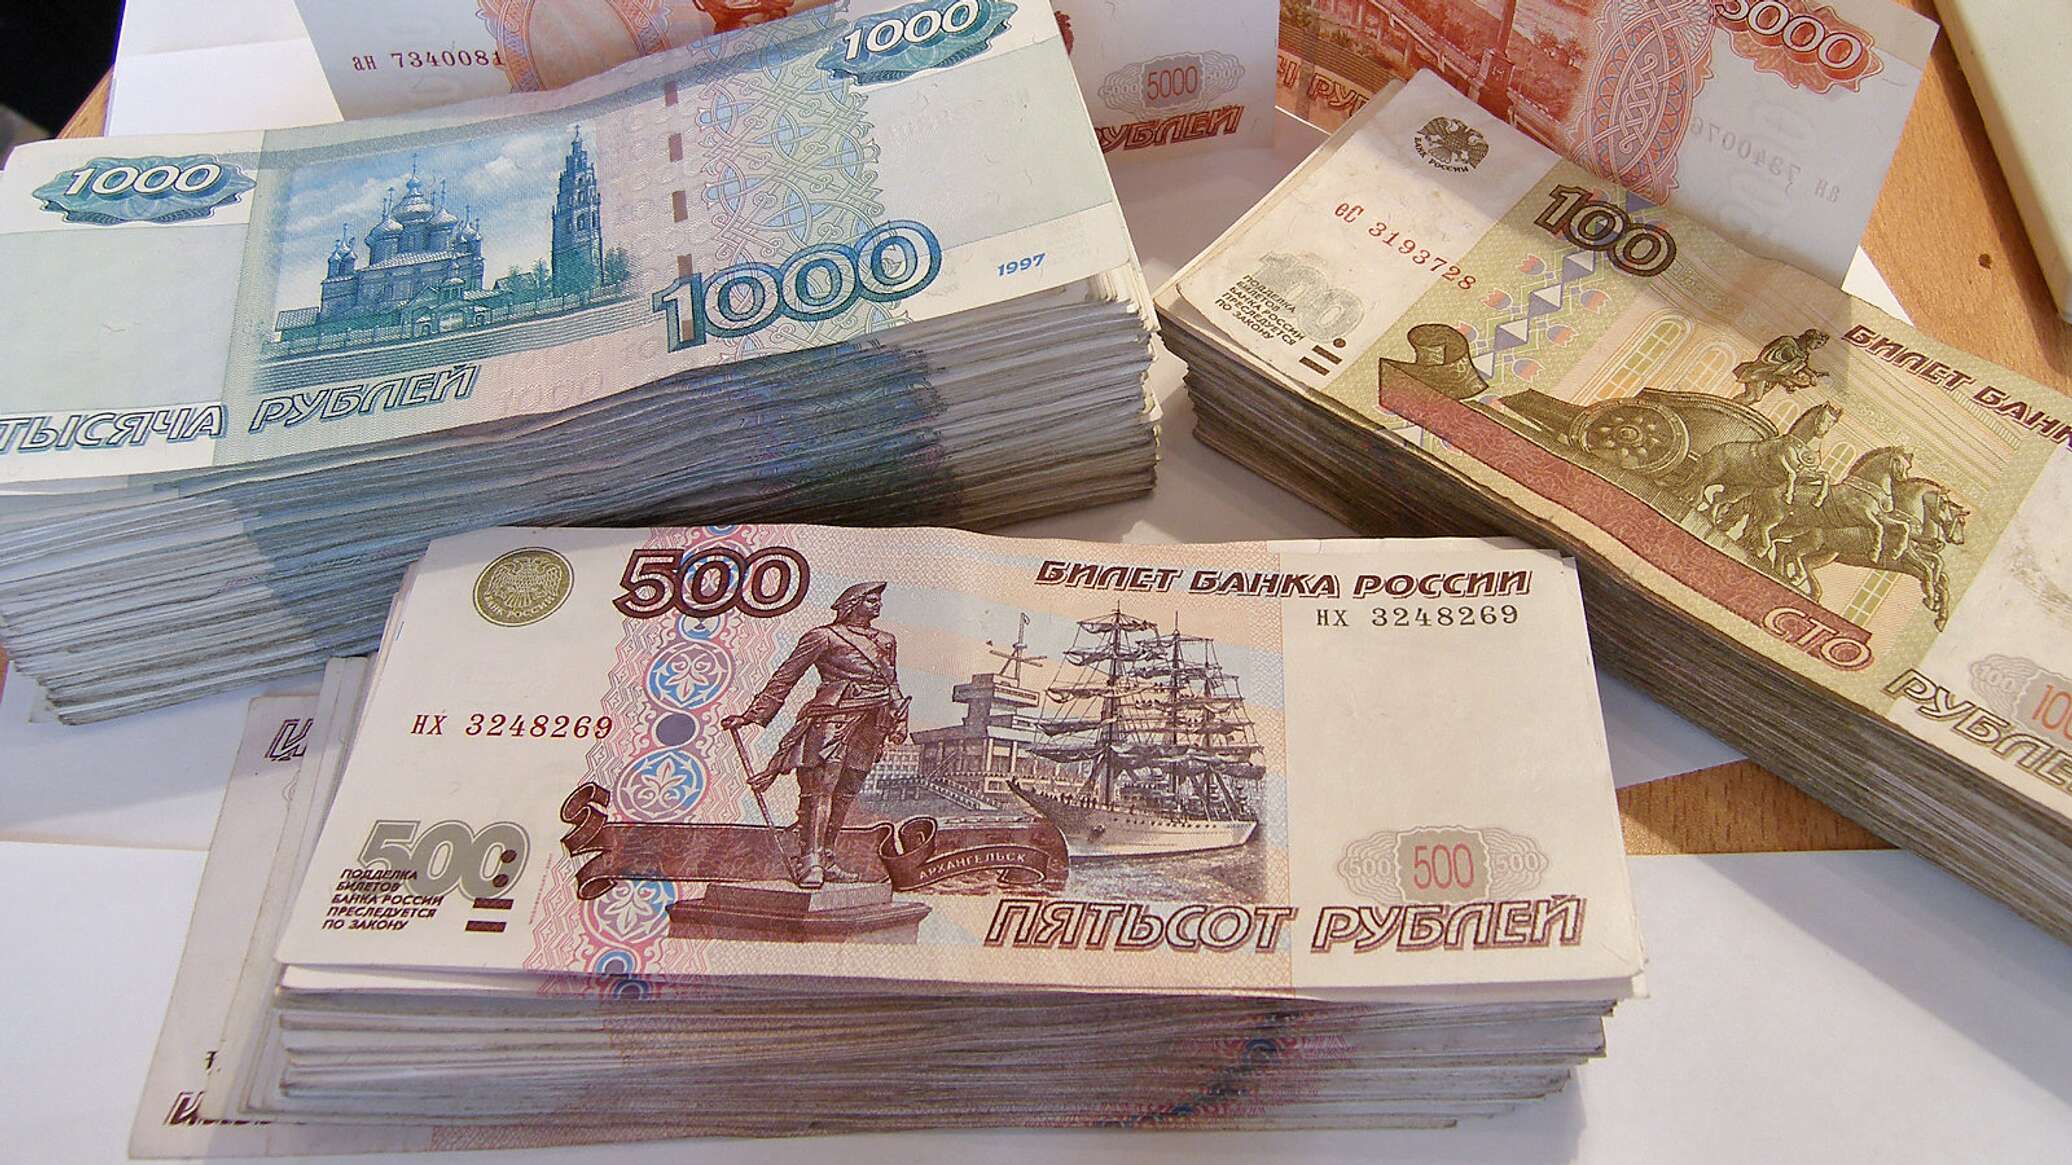 Прибыль 500 000 рублей. Бумажные деньги. Российские деньги. Много рублей. Деньги бумажные крупные.